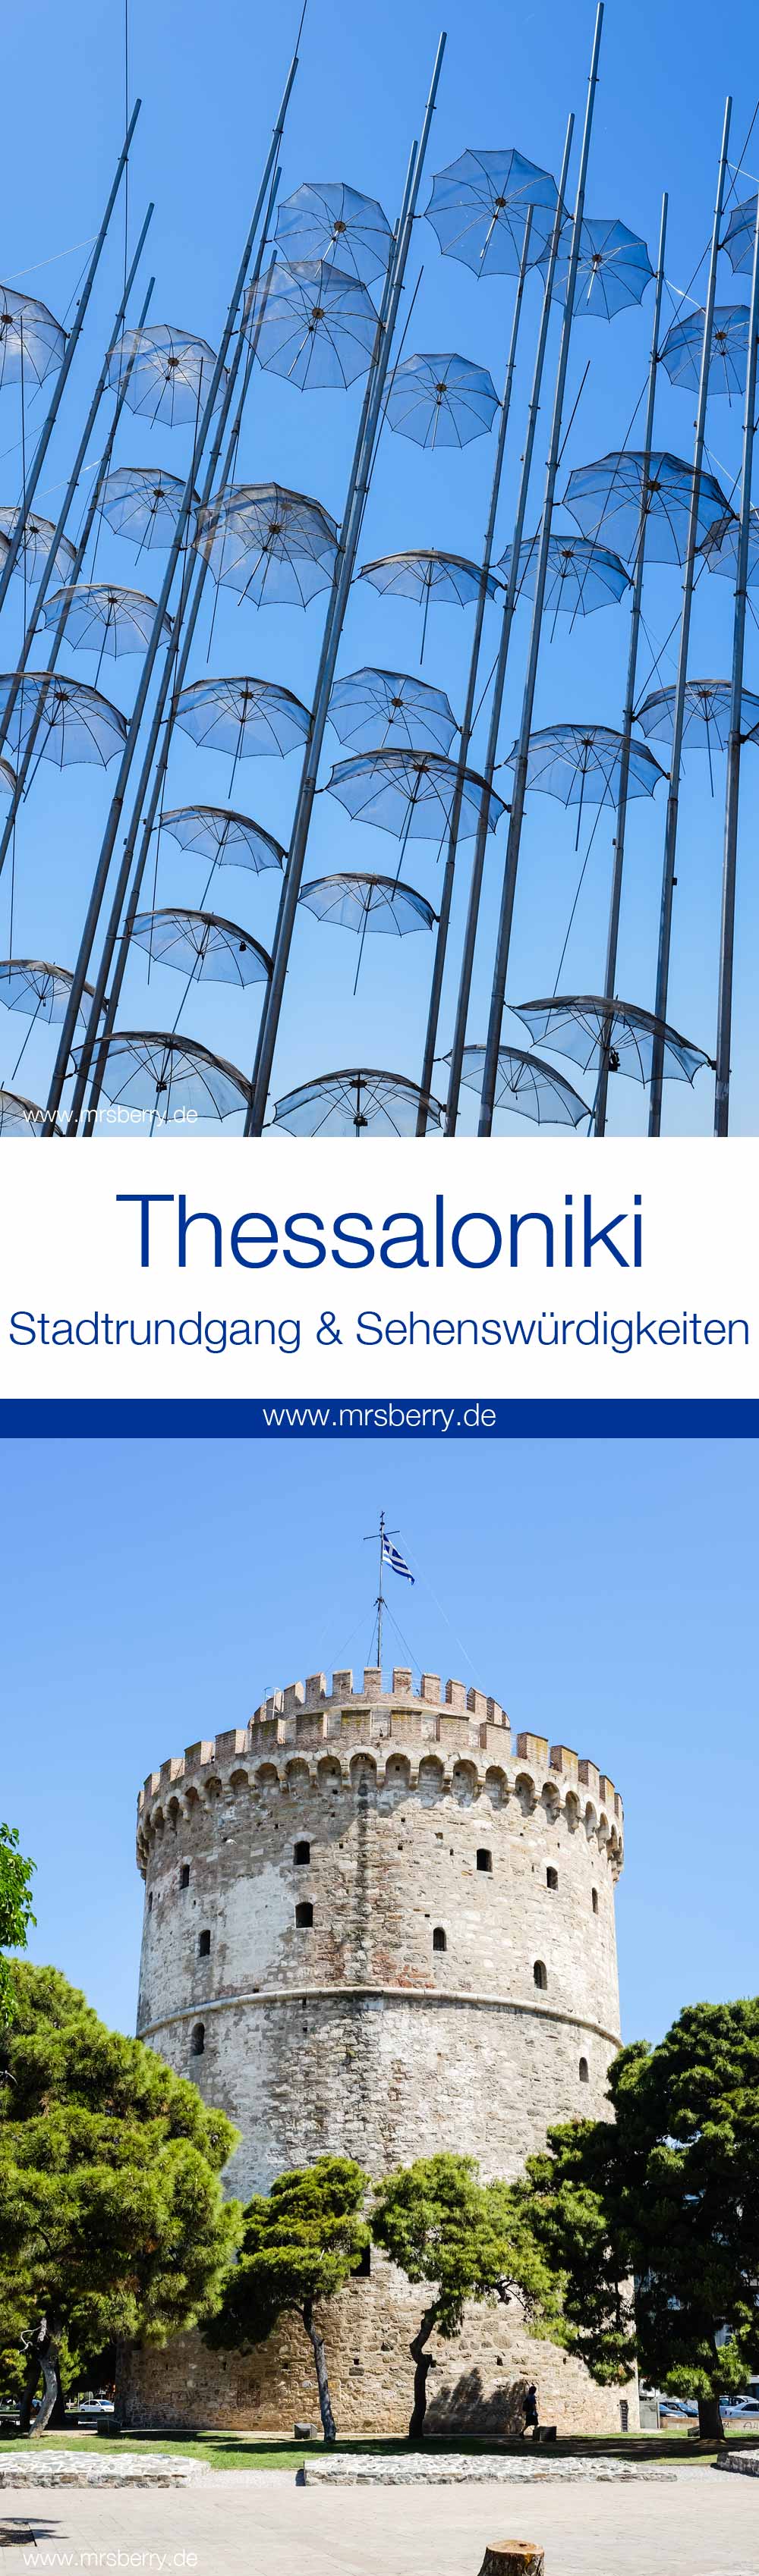 Griechenland: Sehenswürdigkeiten in Thessaloniki - ein Stadtrundgang in 4 Stunden: Regenschirme & Weisser Turm